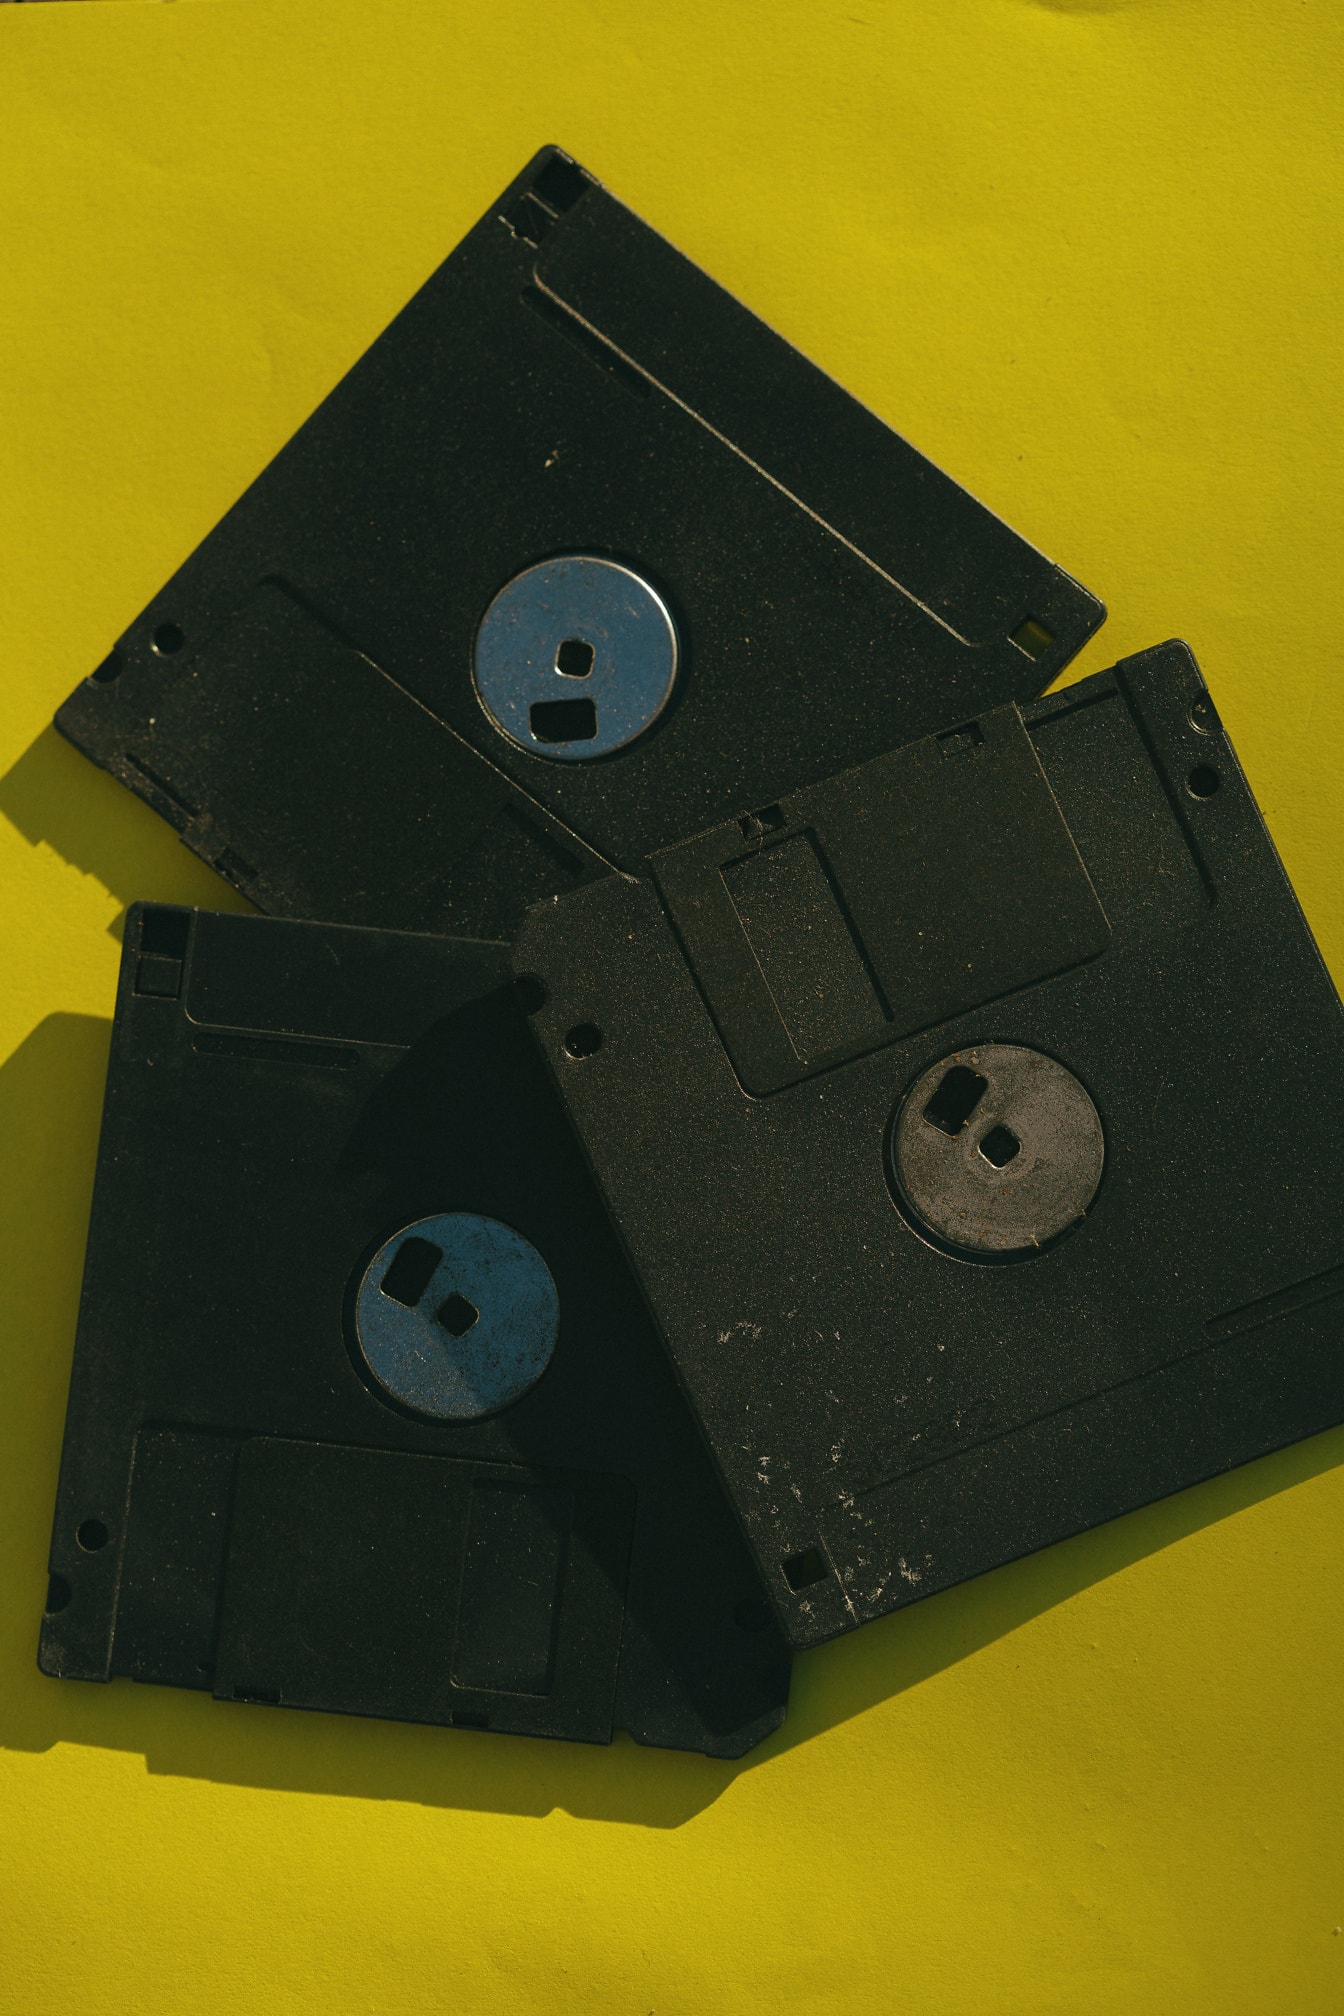 Staré čierne diskety na žltom povrchu